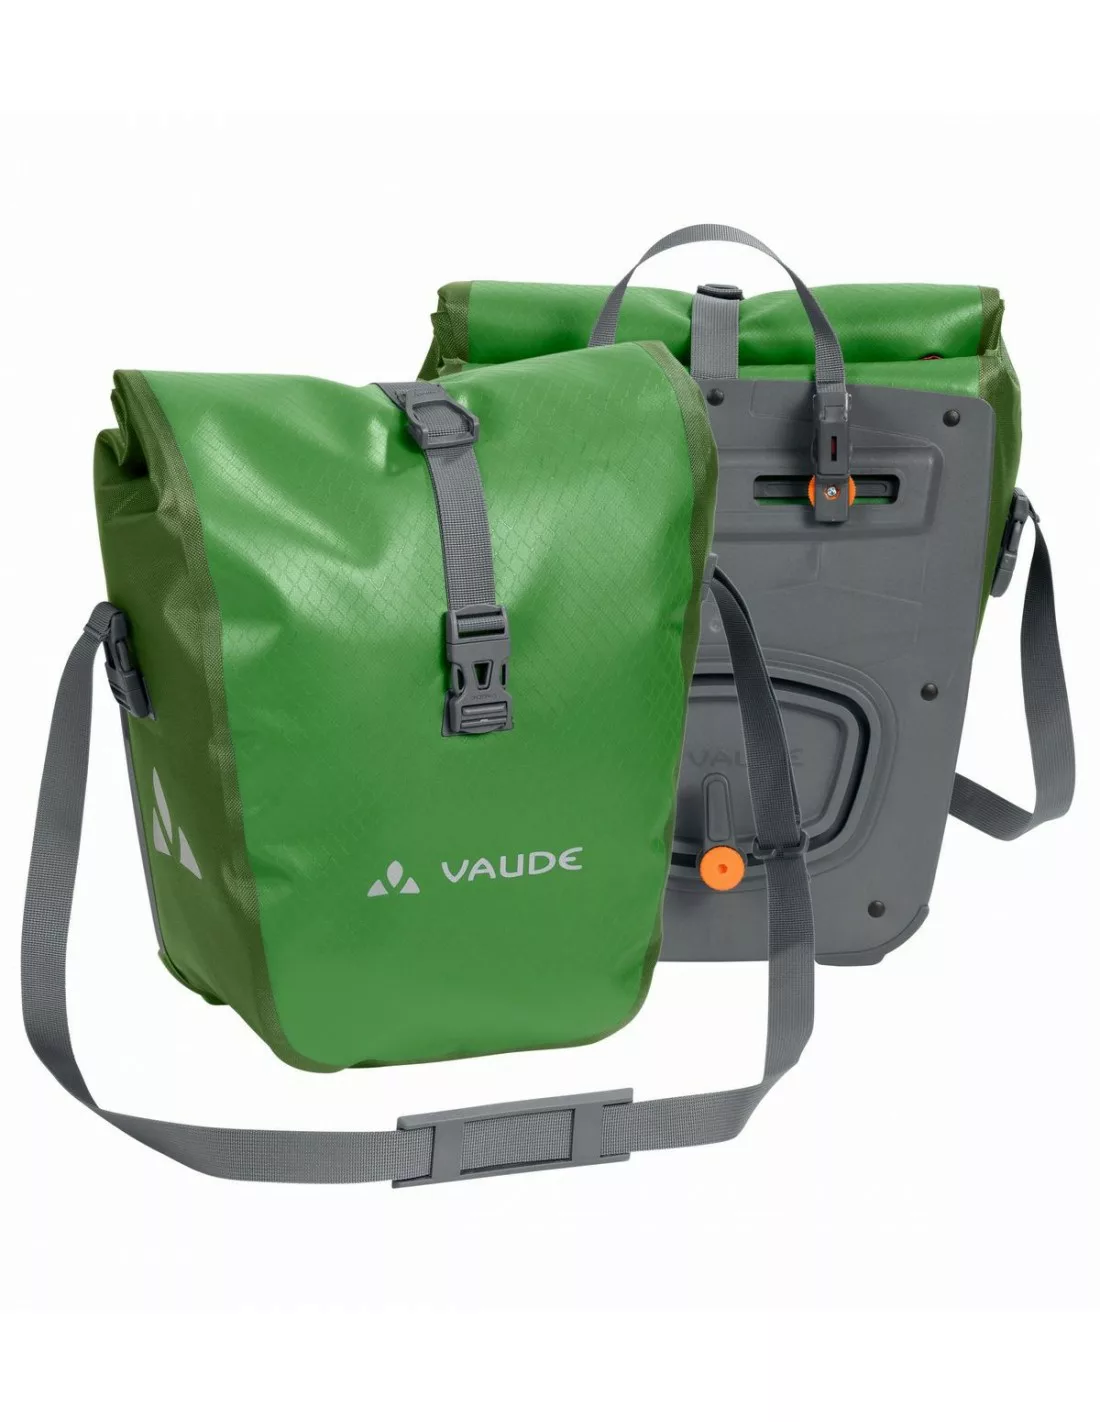 Vaude Aqua Front - Parrot Green Taschenvariante - Gepäckträgertaschen, günstig online kaufen